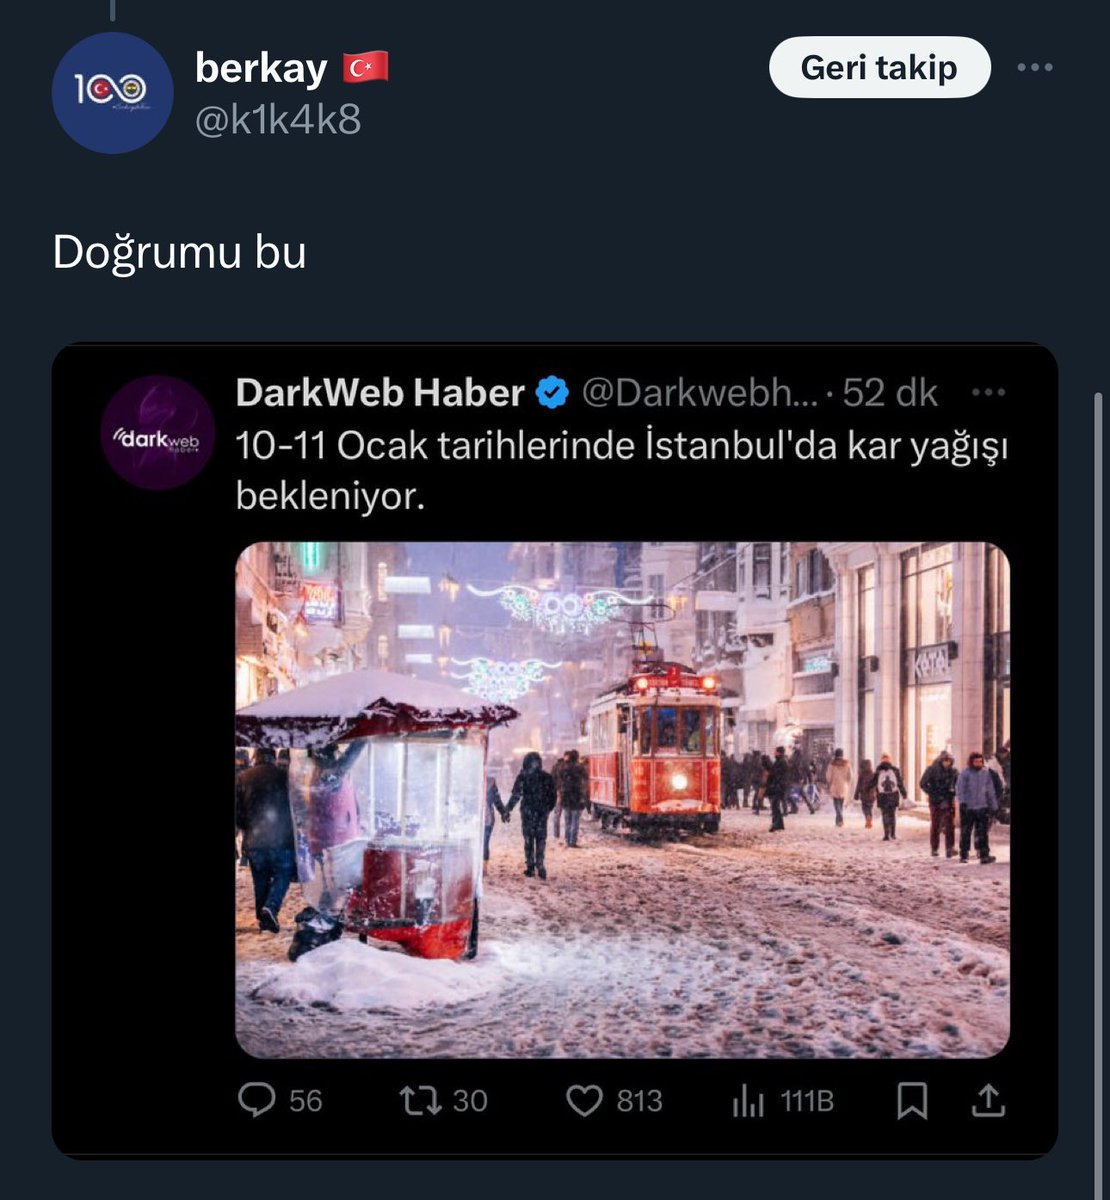 Her kış teyit merkezi gibi çalıştırıyorlar bizi, İstanbul ve Marmara için uzak tahminde görünen bir soğuk sistem var, şimdilik hepsi bu. Ama böyle yazarsa beklediği etkileşimi almaz, geliyor yazması lazım. Böyle siteleri bırakmanızı şiddetle öneririm